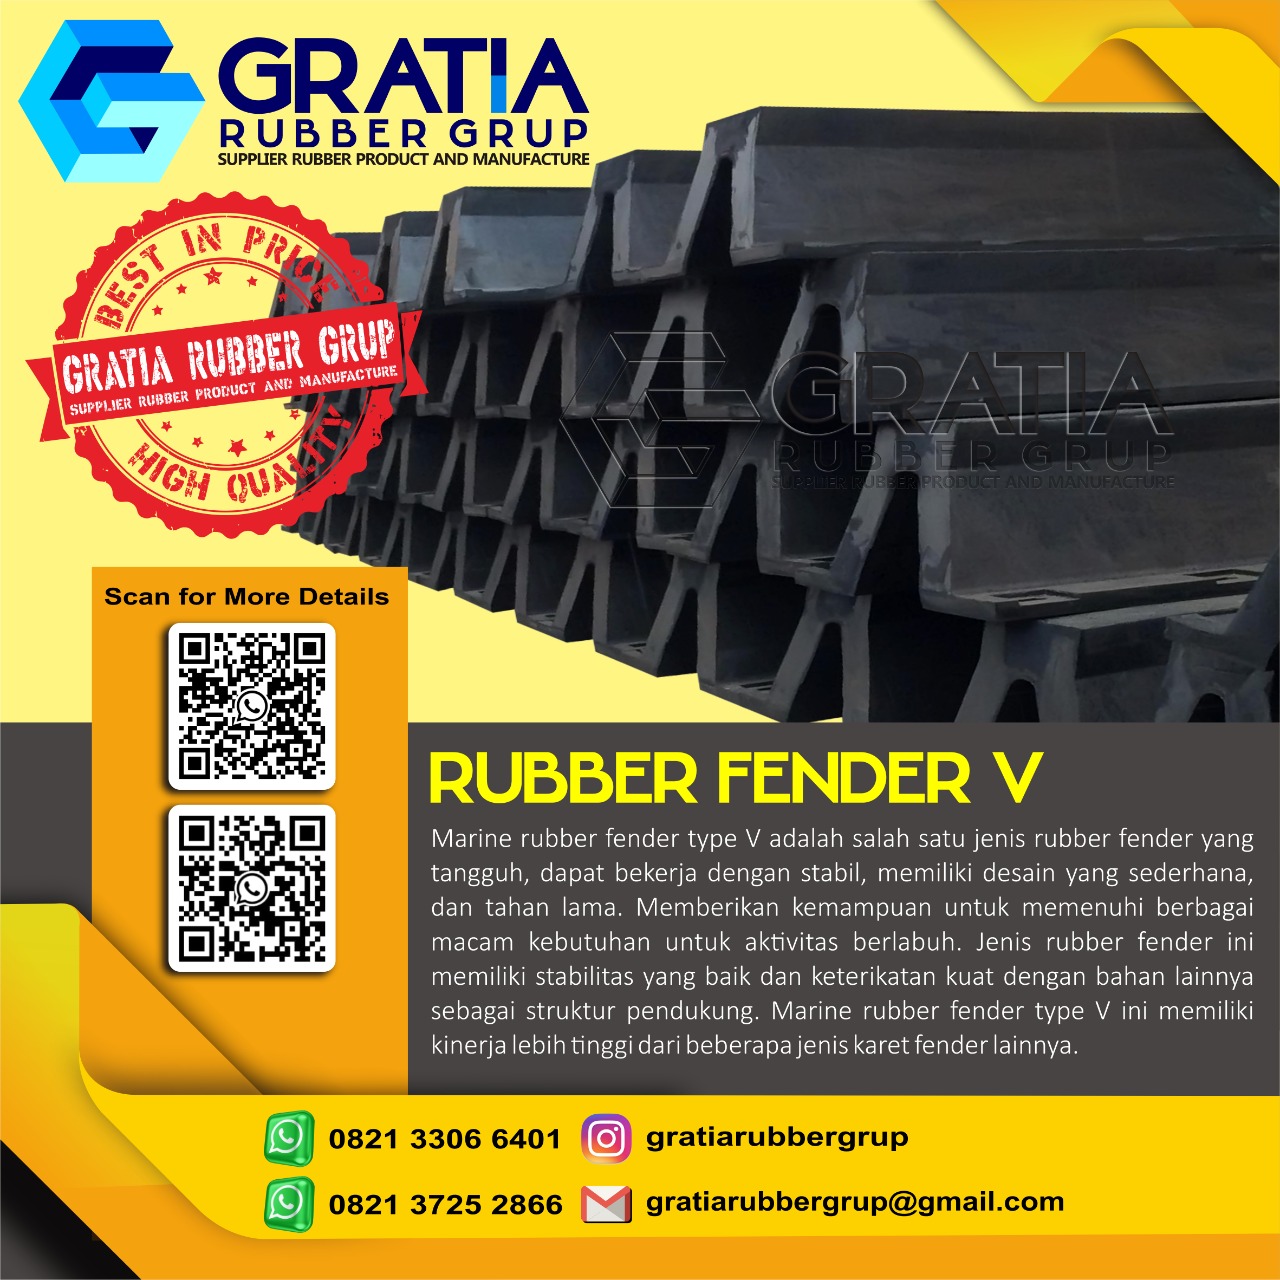 Harga Rubber Fender Terlengkap  Melayani Pengiriman Ke Lubuklinggau Sumatera Selatan Hub 0821 3306 0461